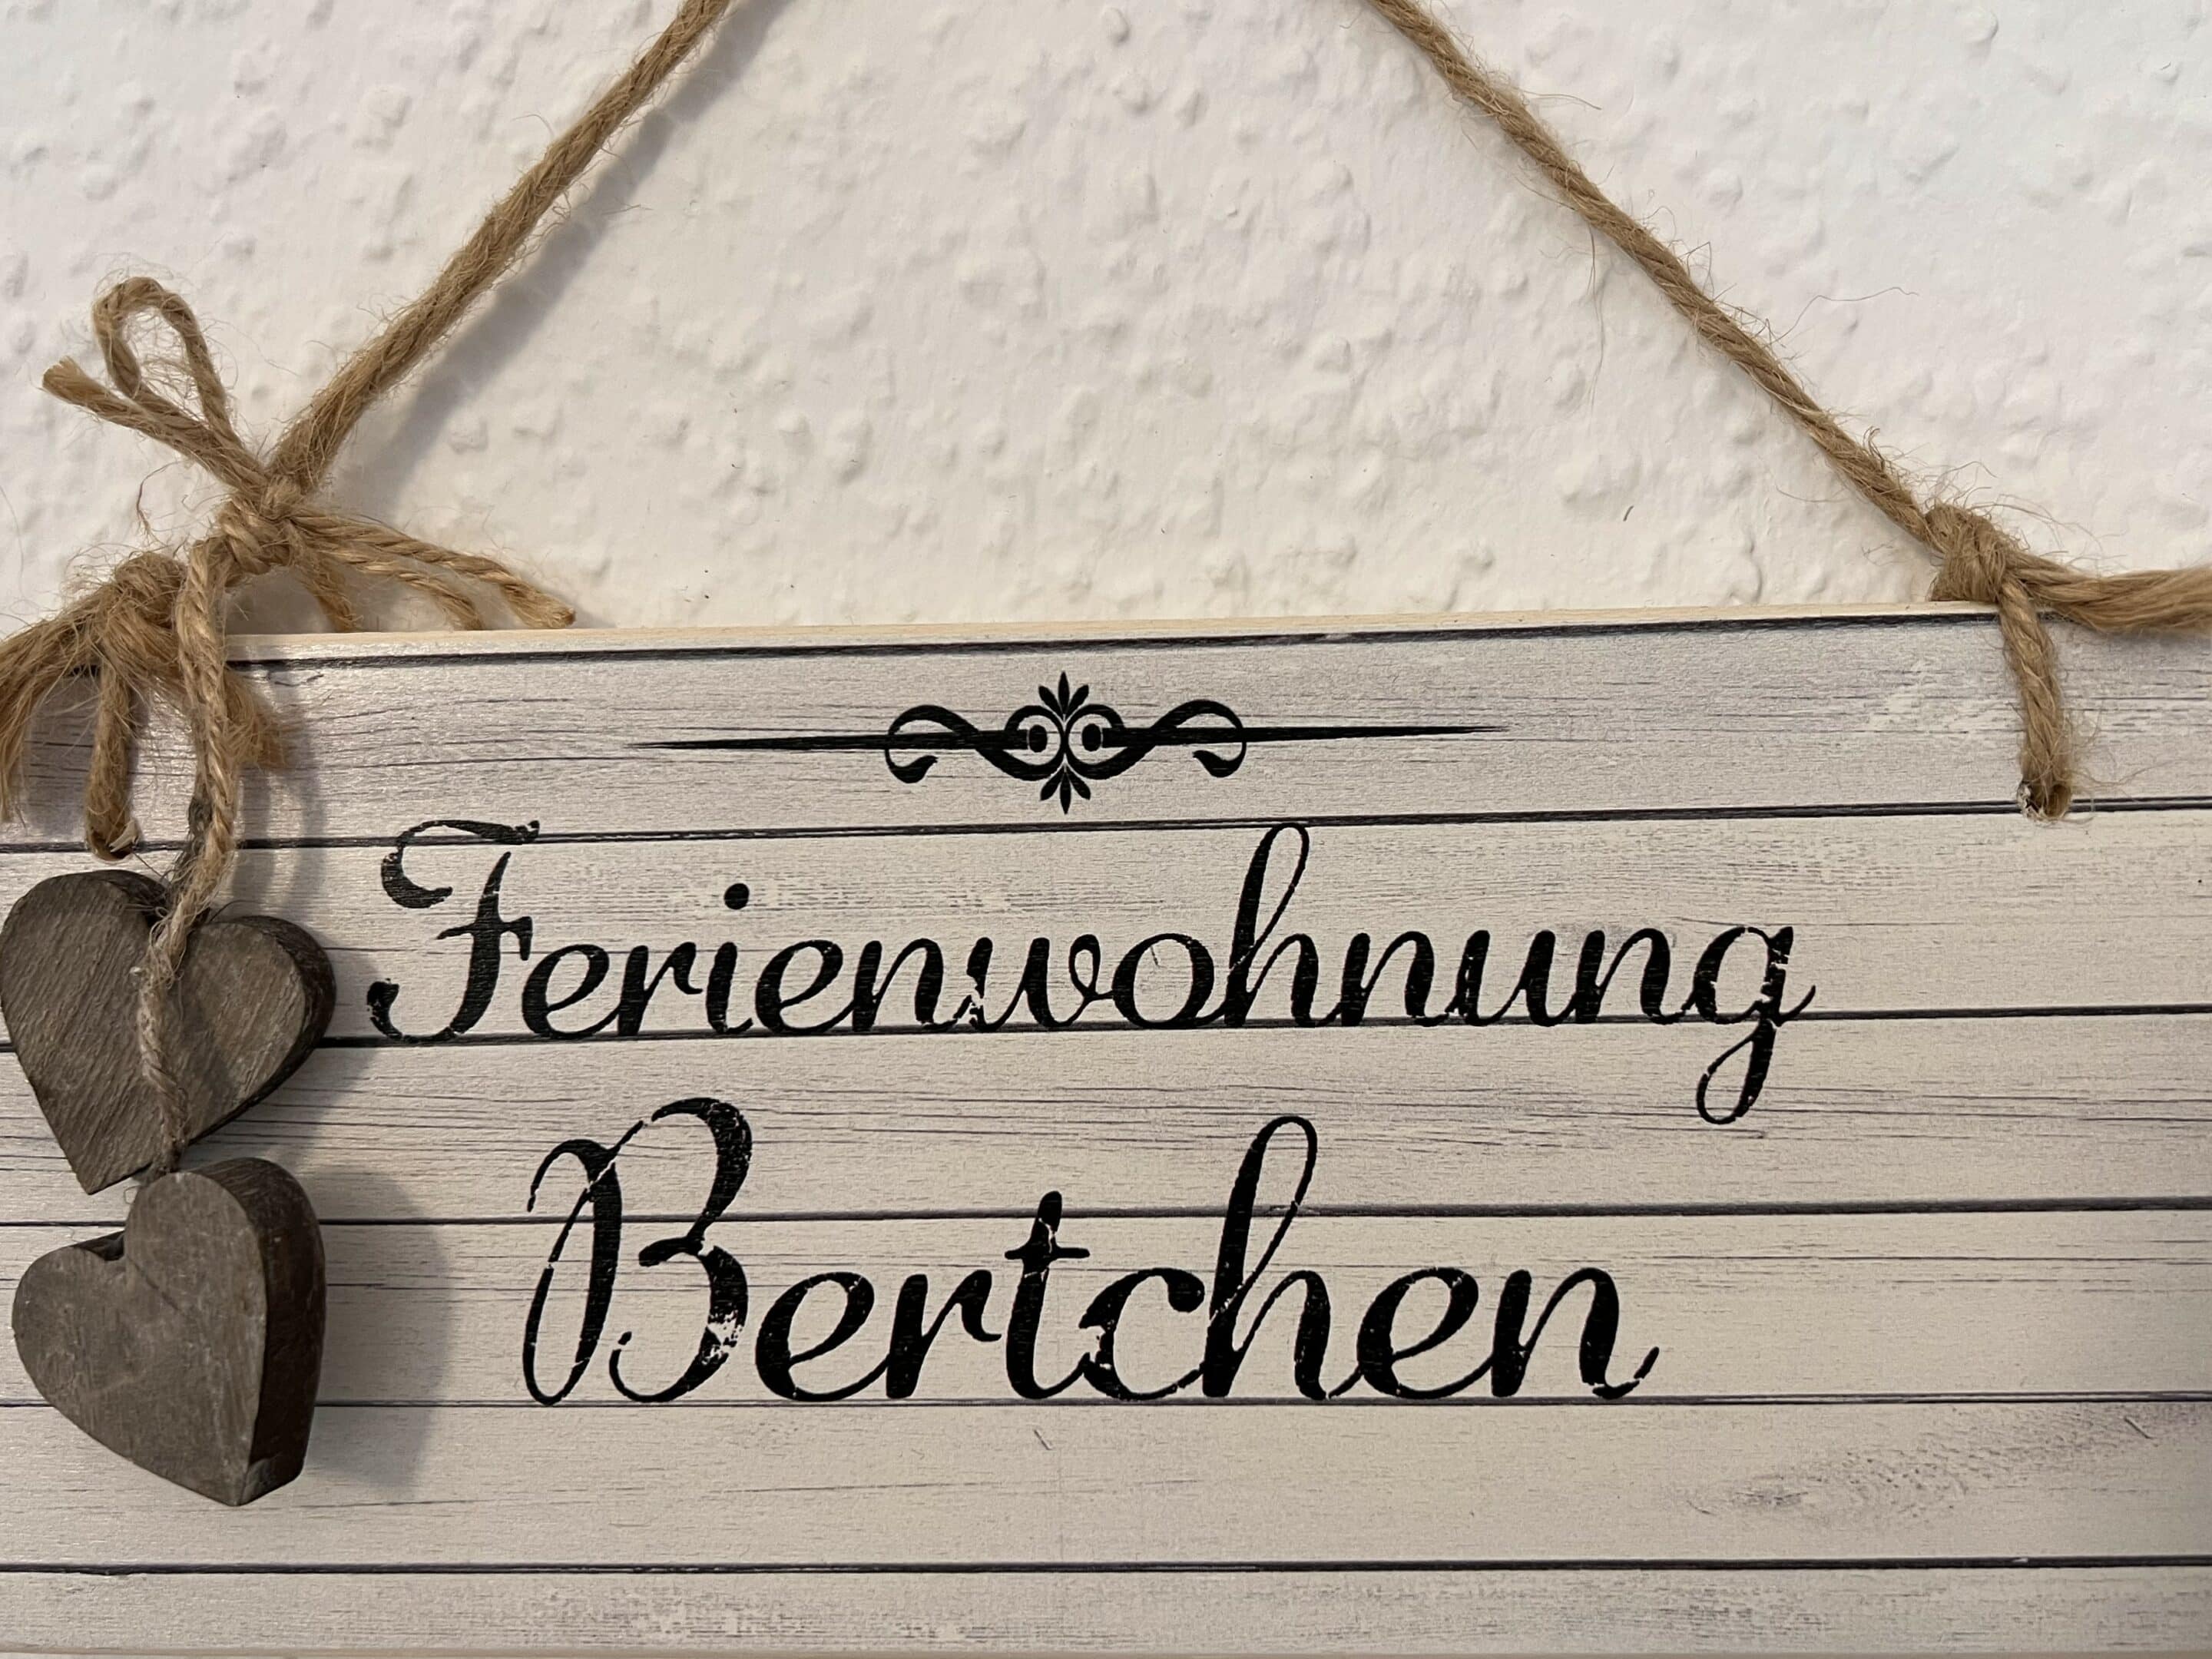 Bertchen-Tuerschild-1000x750